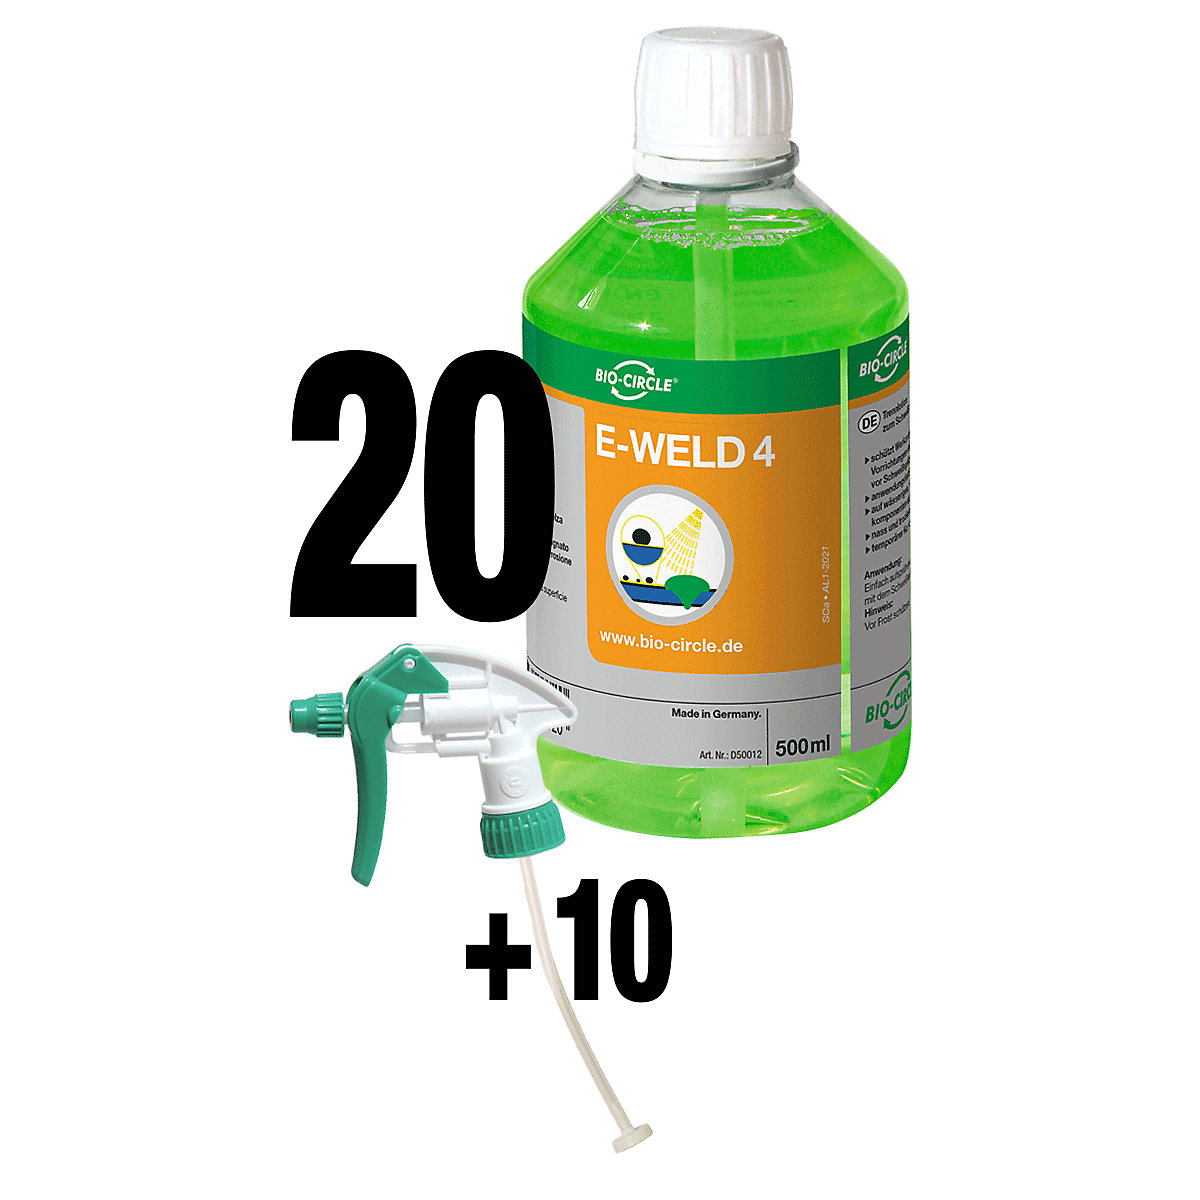 E-WELD 4 hegesztésvédő spray - Bio-Circle